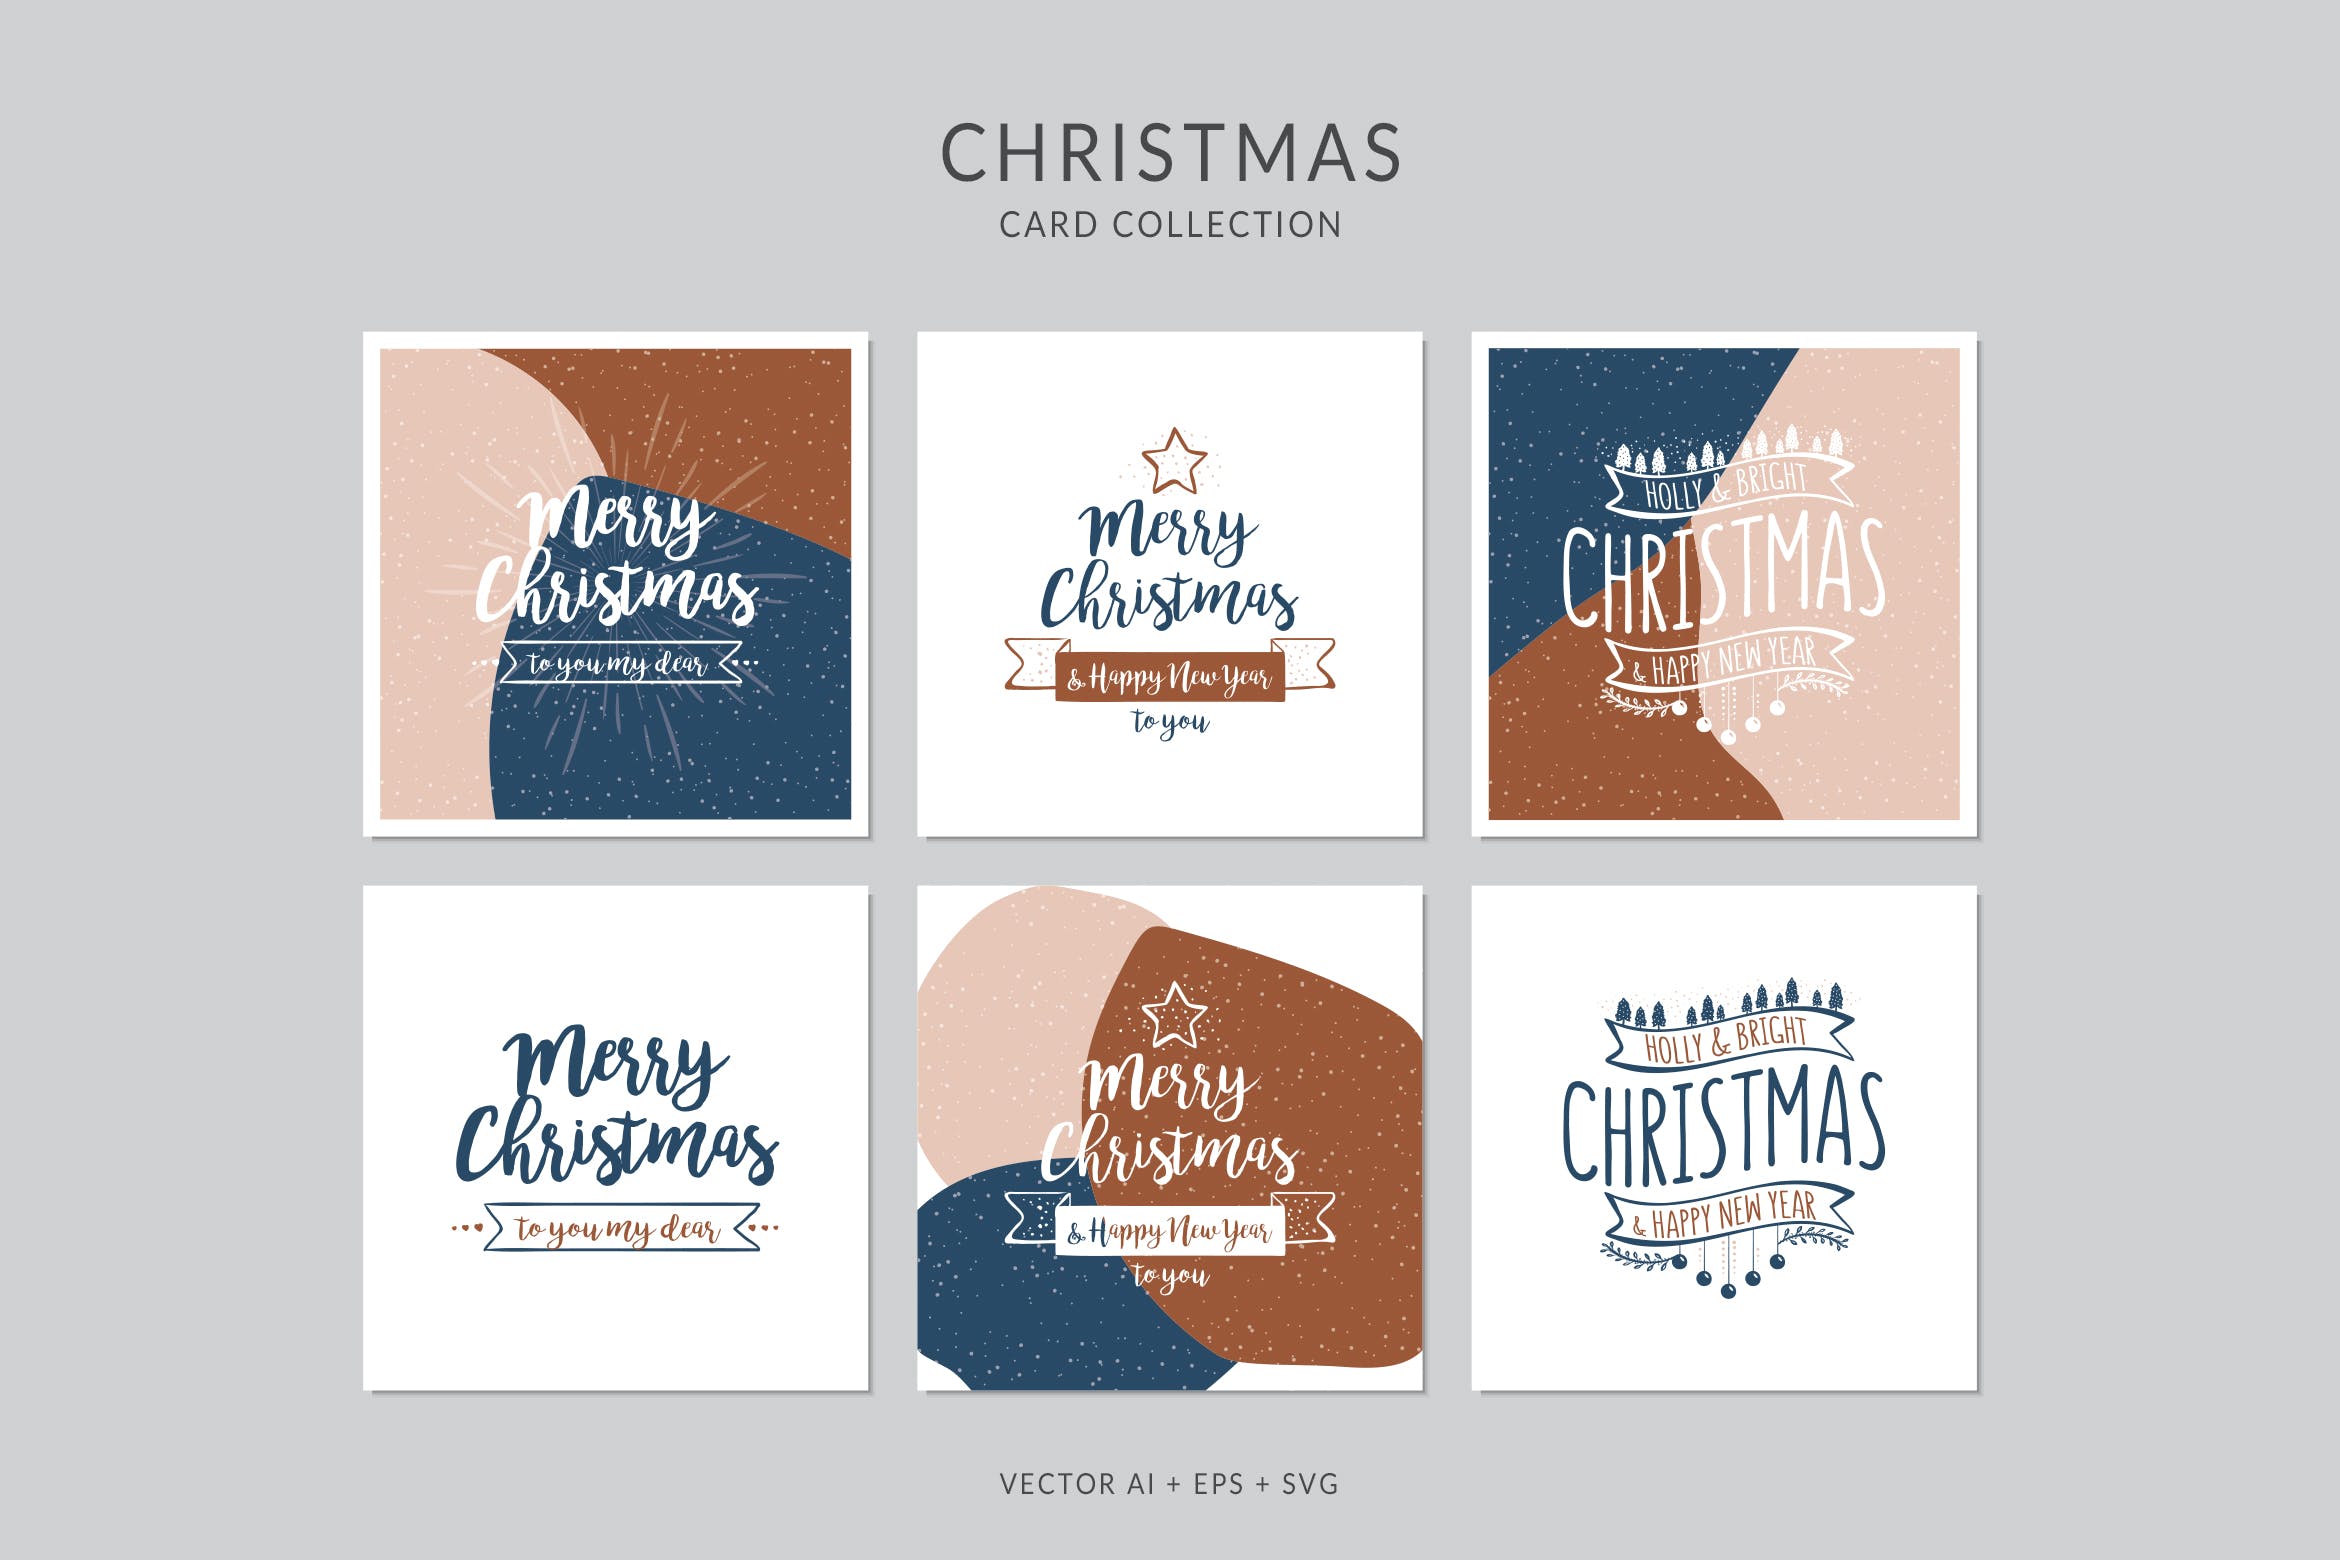 创意三色设计风格诞节贺卡矢量设计模板集v5 Christmas Greeting Card Vector Set插图